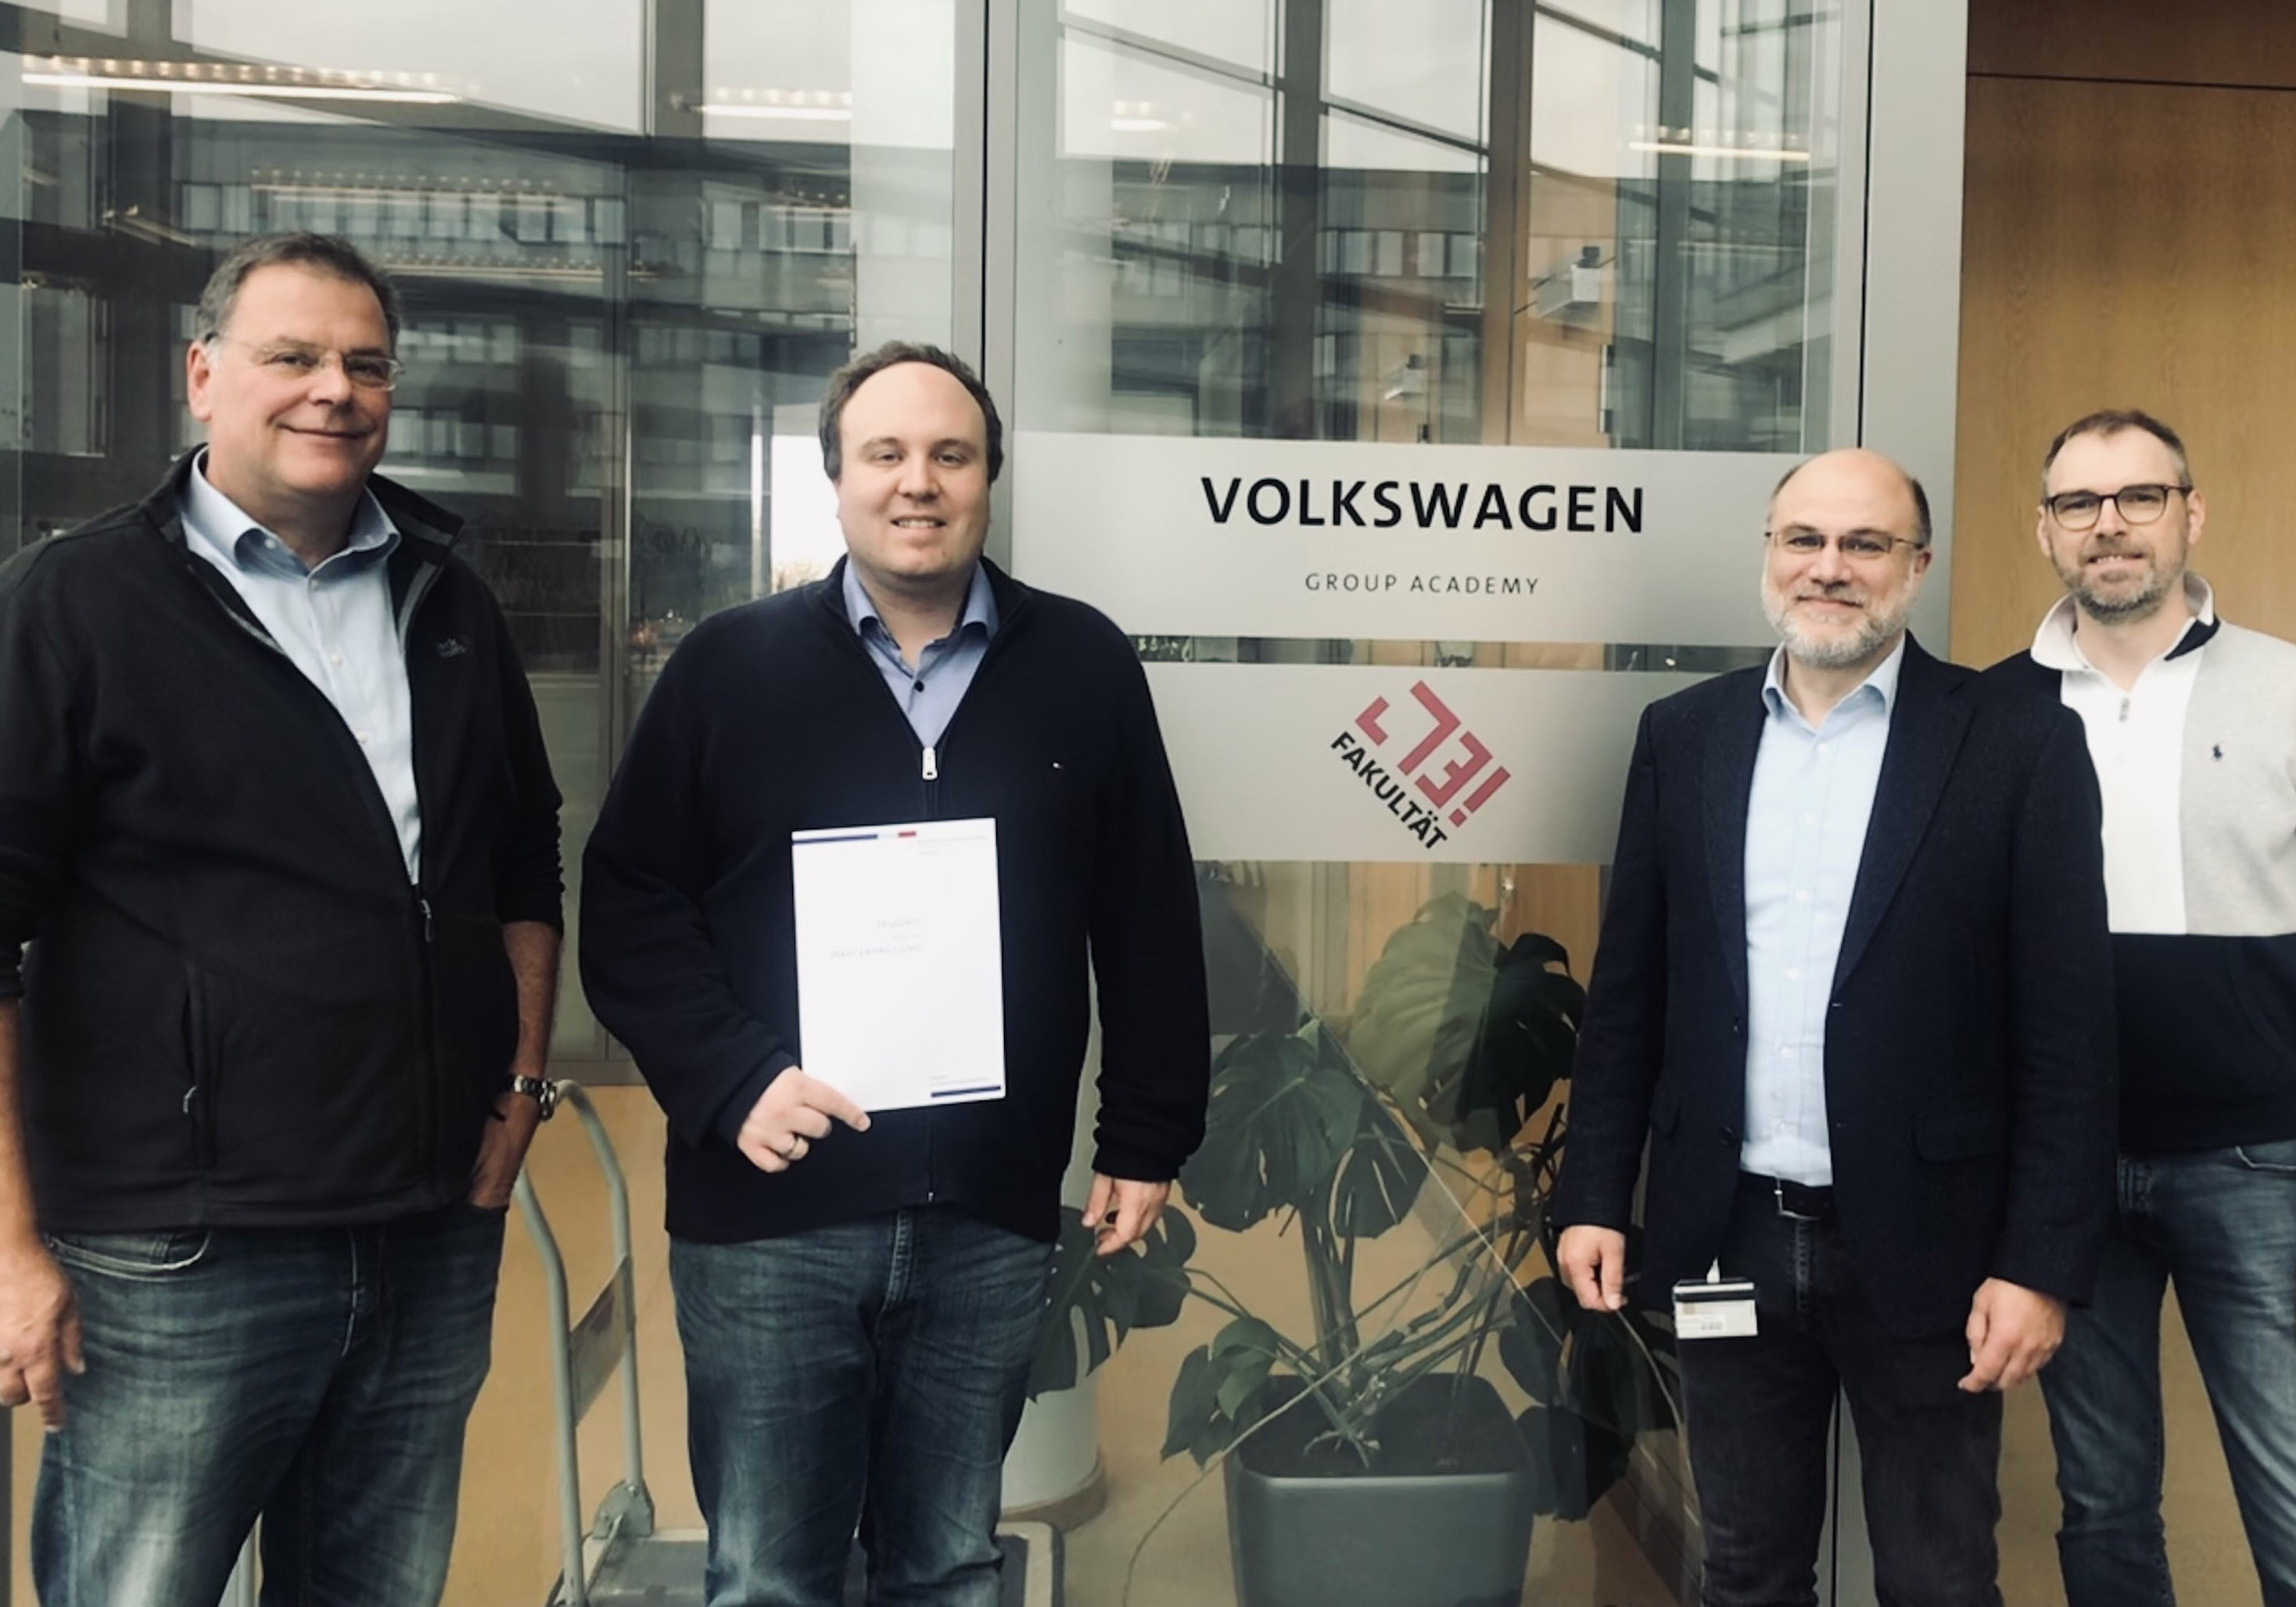 Gruppenbild von vier Personen, eine hält eine Urkunde in der Hand, im Hintergrund der Schriftzug Volkswagen Group Academy. 